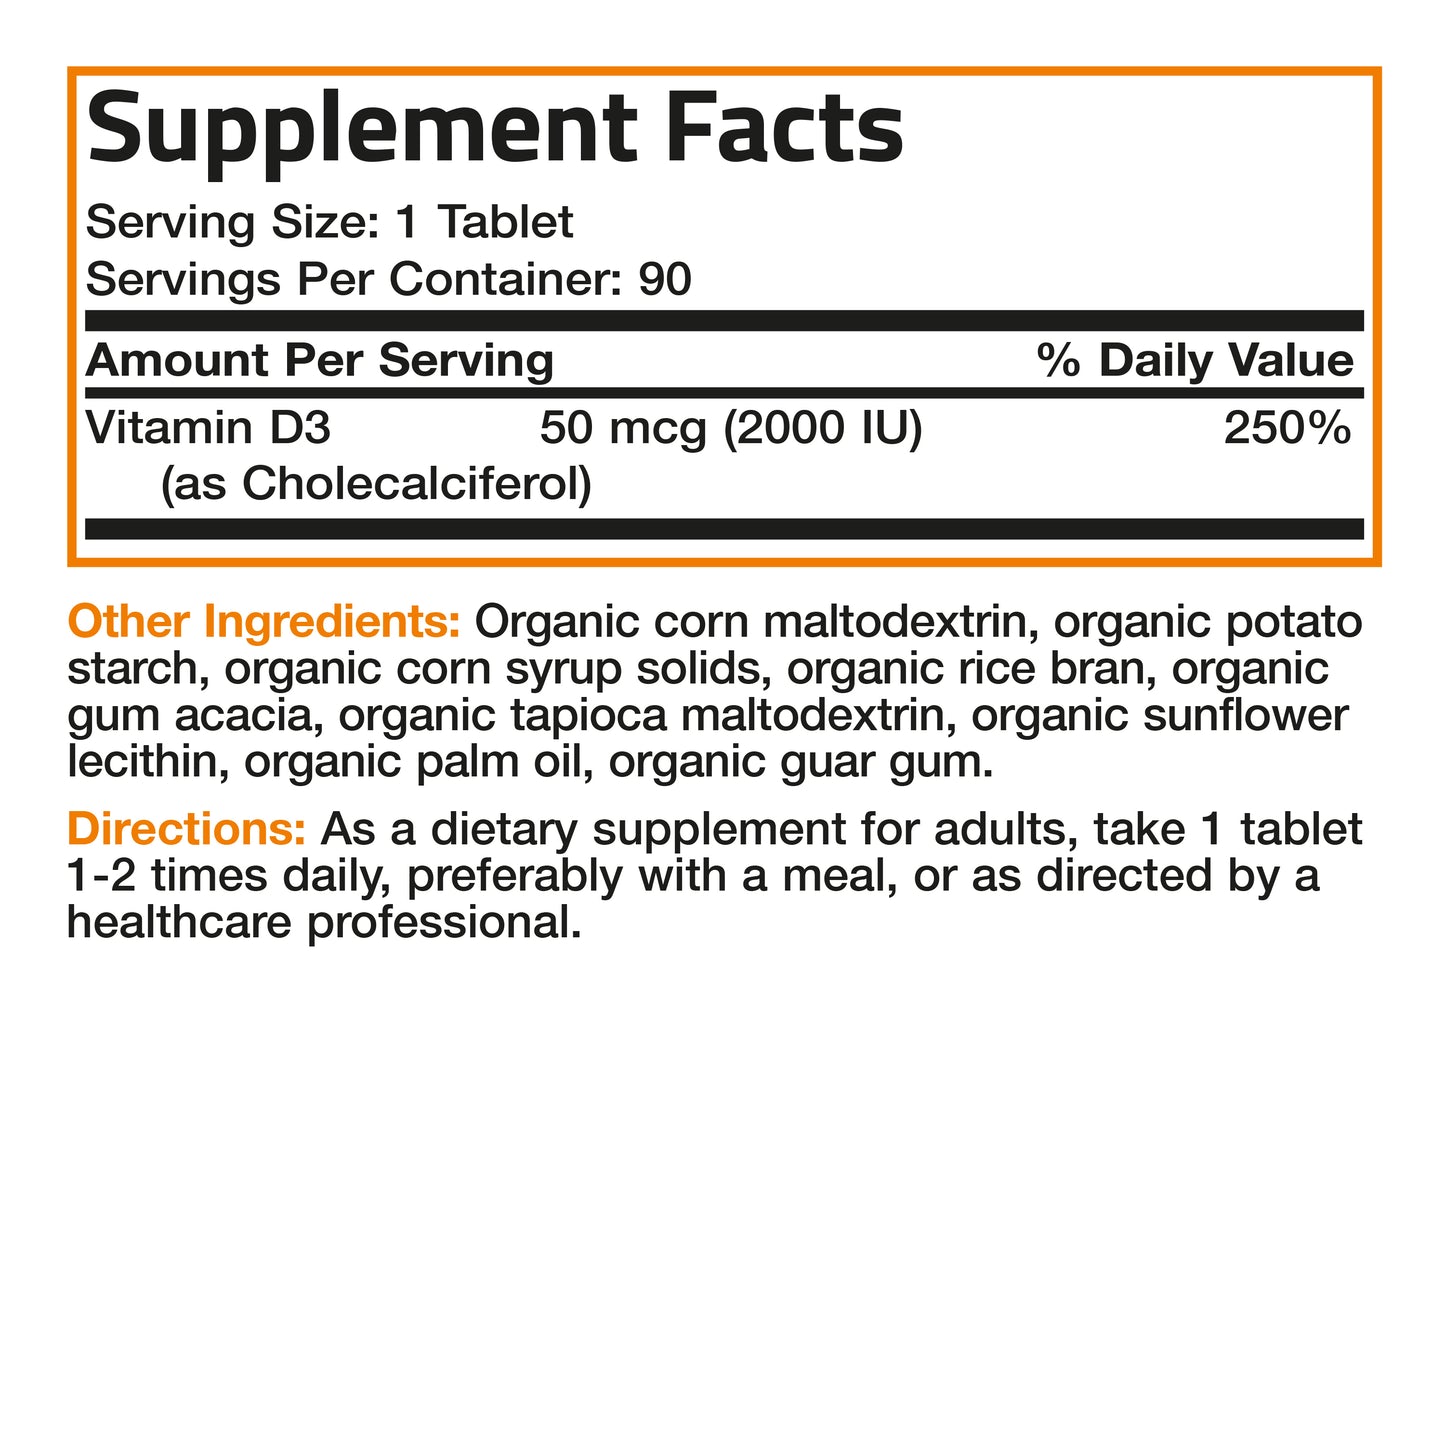 Vitamin D3 USDA Certified Organic - 2,000 IU